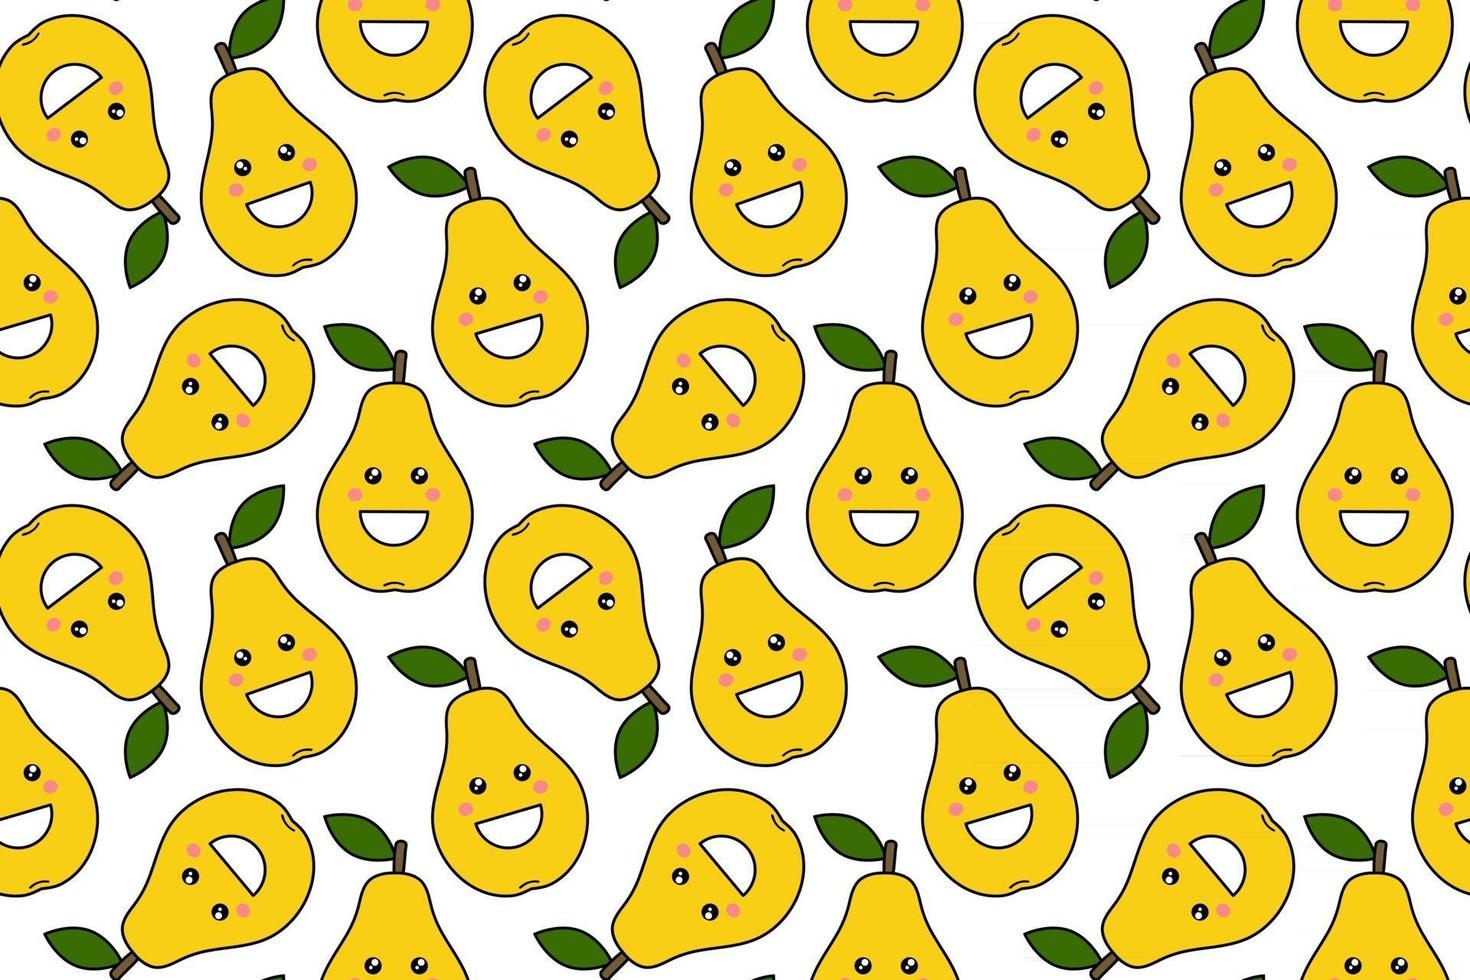 vrolijke kawaii fruitprints voor kinderen schattig naadloos patroon met smileyperen in cartoon-stijl vector